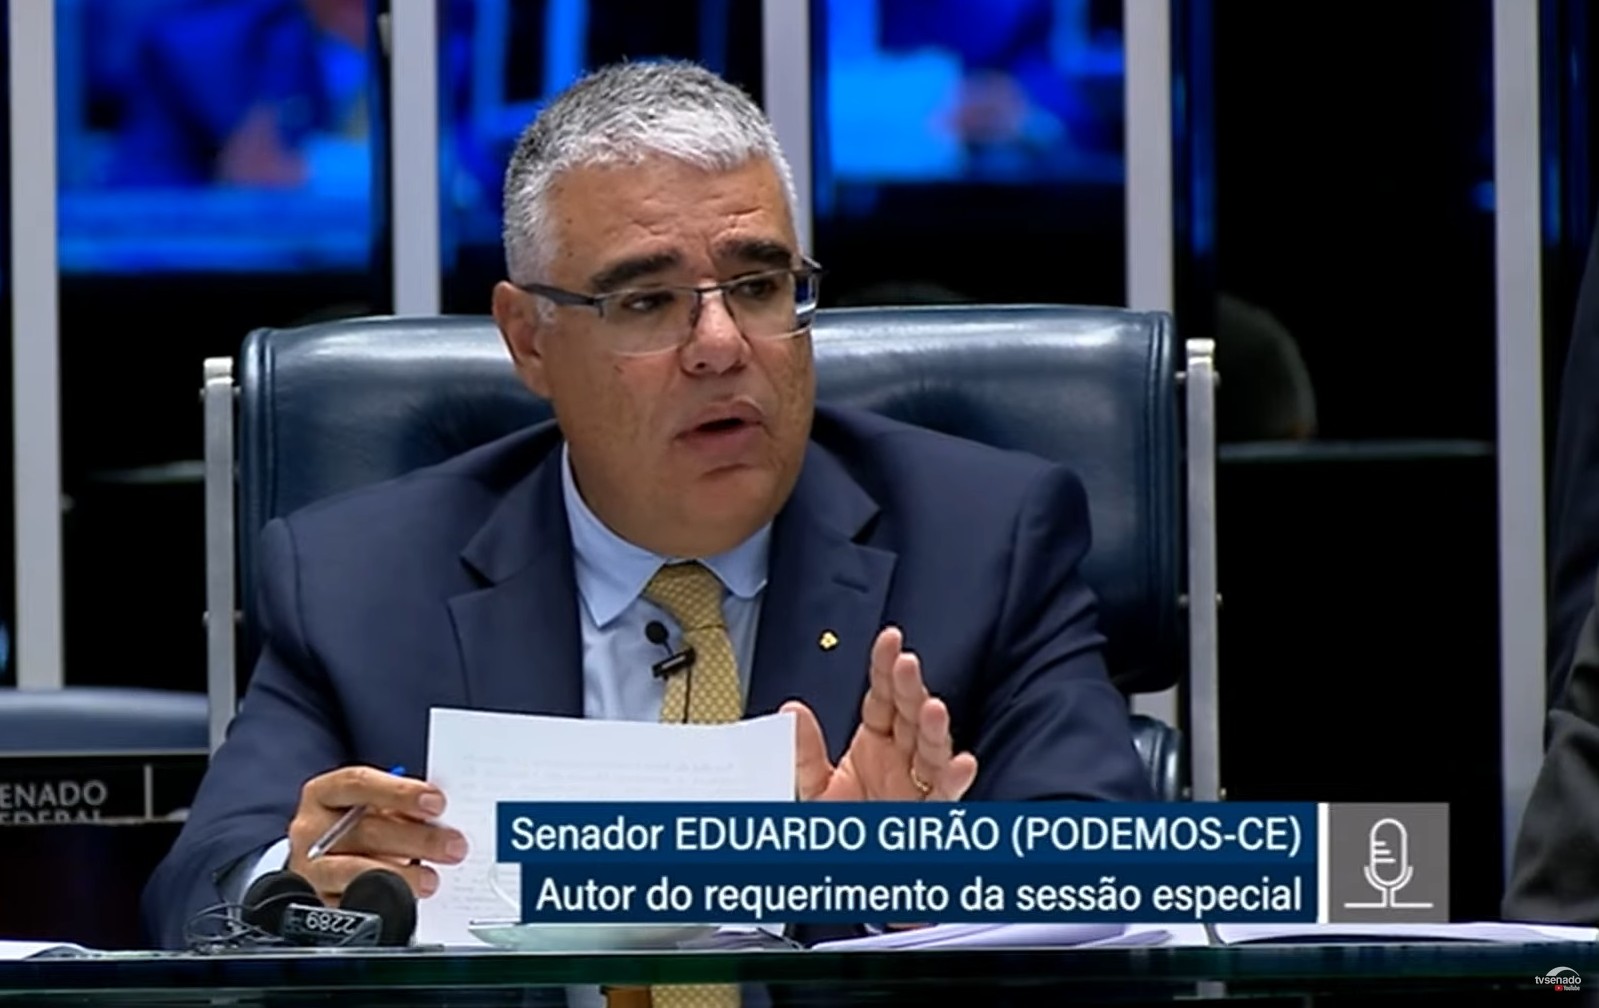 O Senador Eduardo Girão, promotor da iniciativa